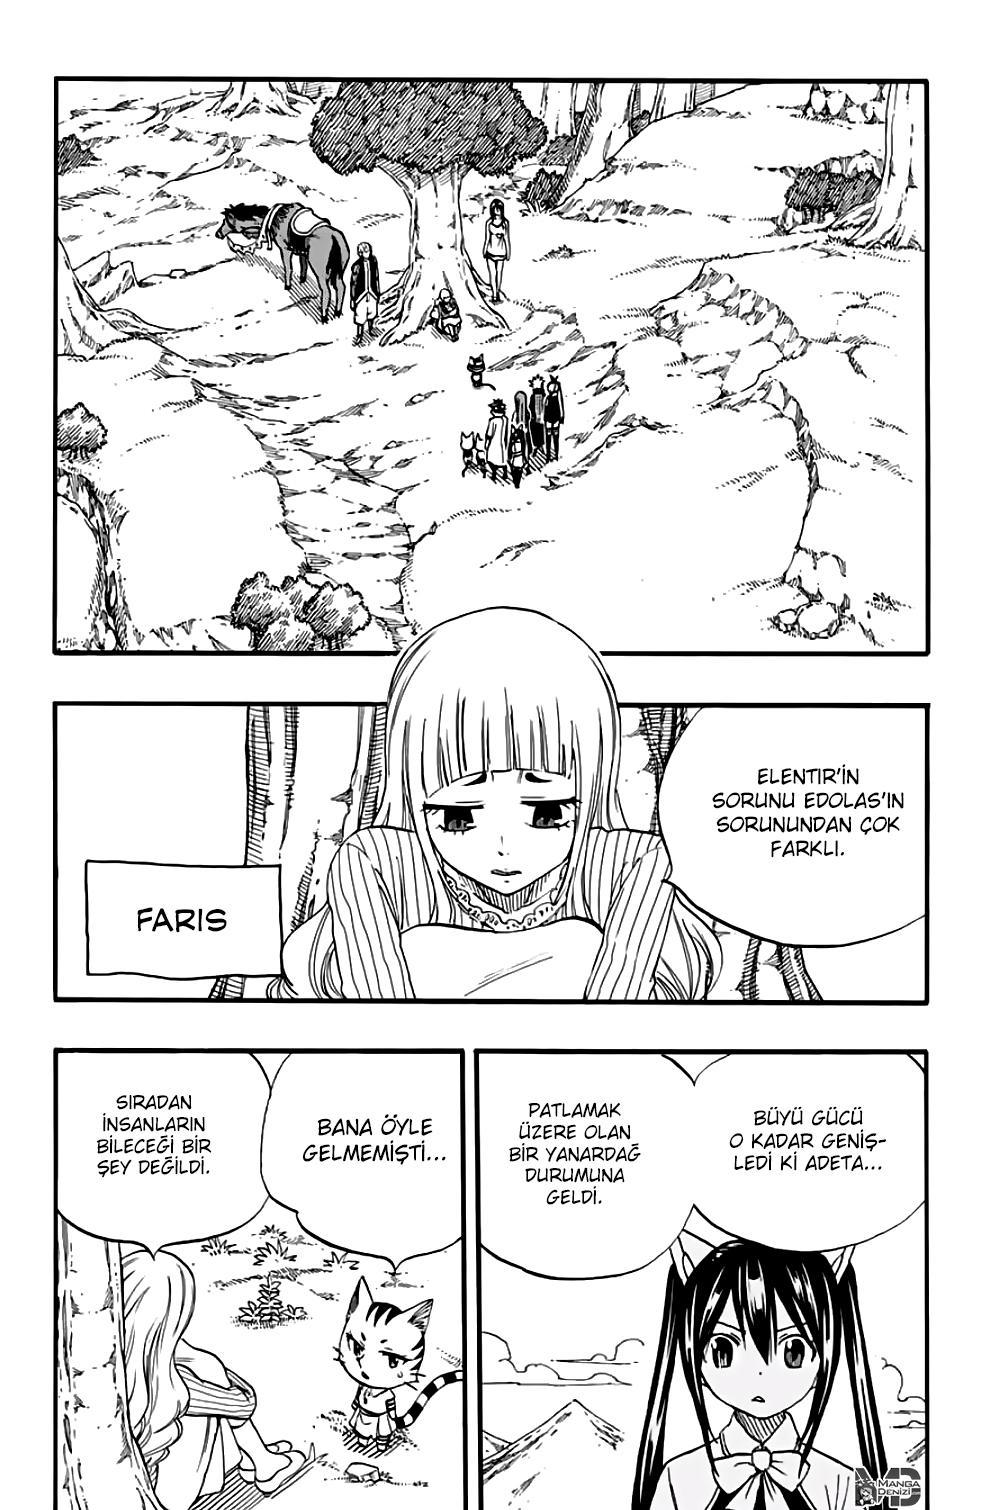 Fairy Tail: 100 Years Quest mangasının 068 bölümünün 3. sayfasını okuyorsunuz.